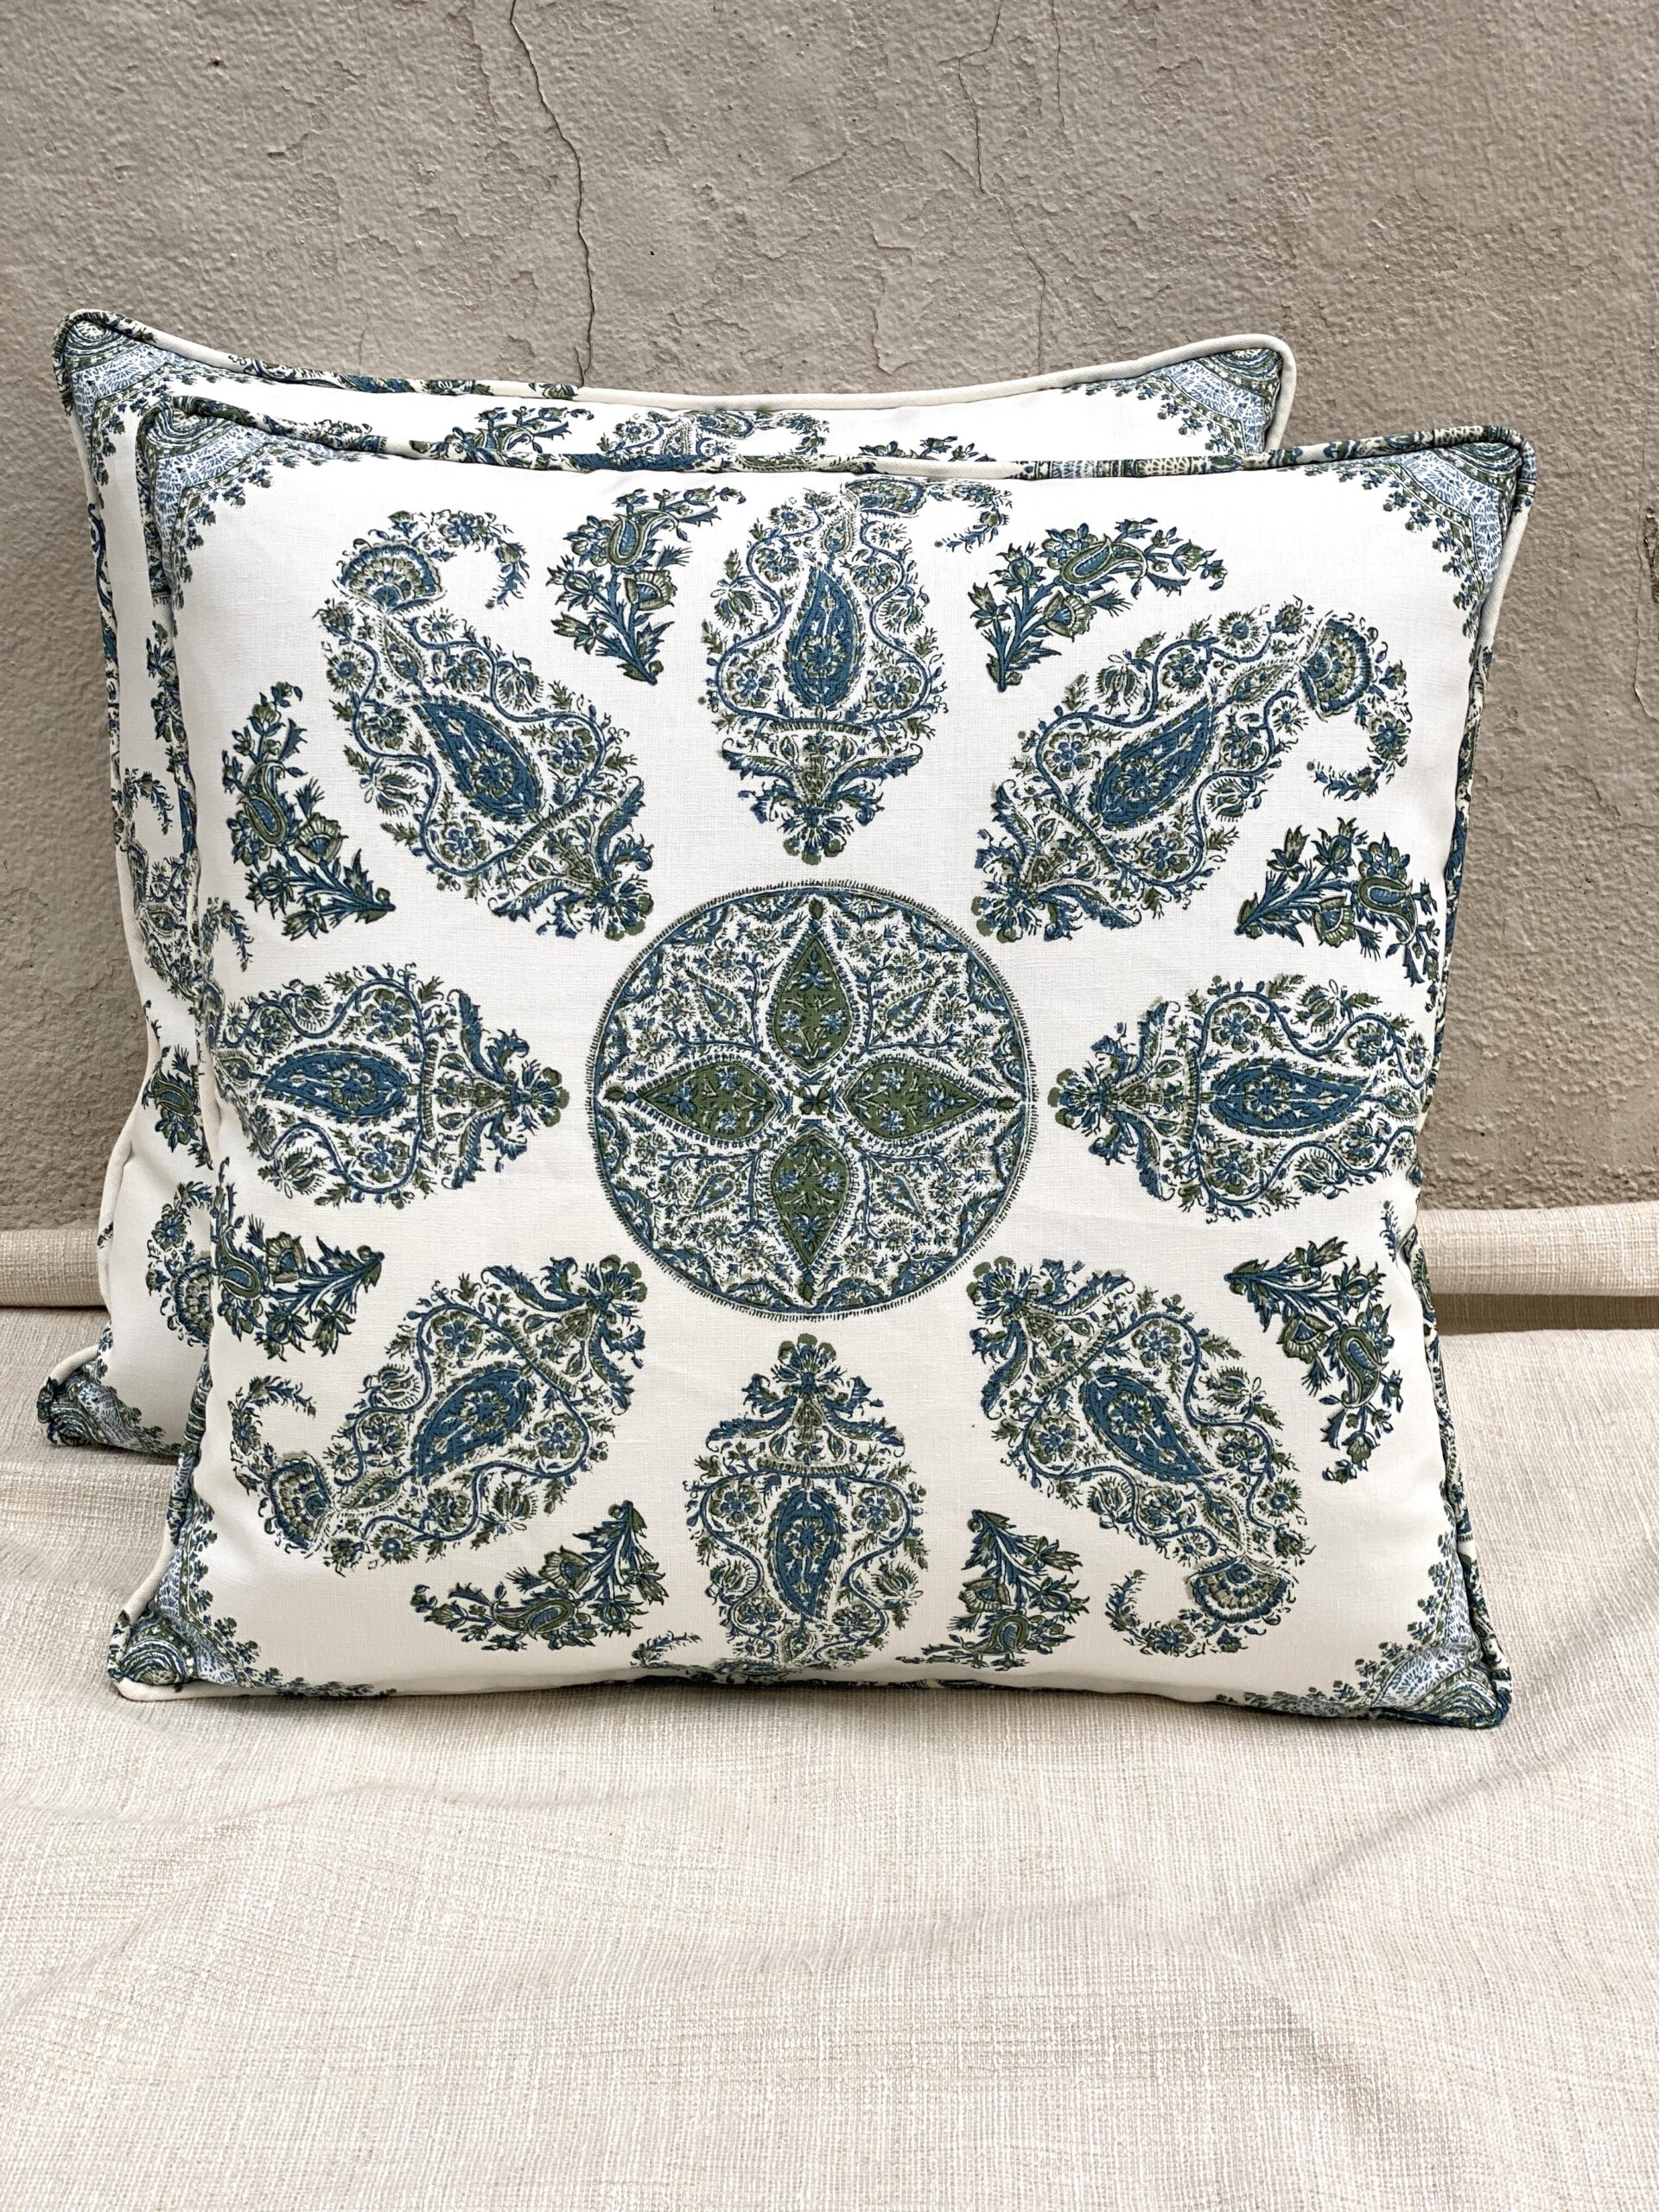 Peter Dunham Textile Pillows